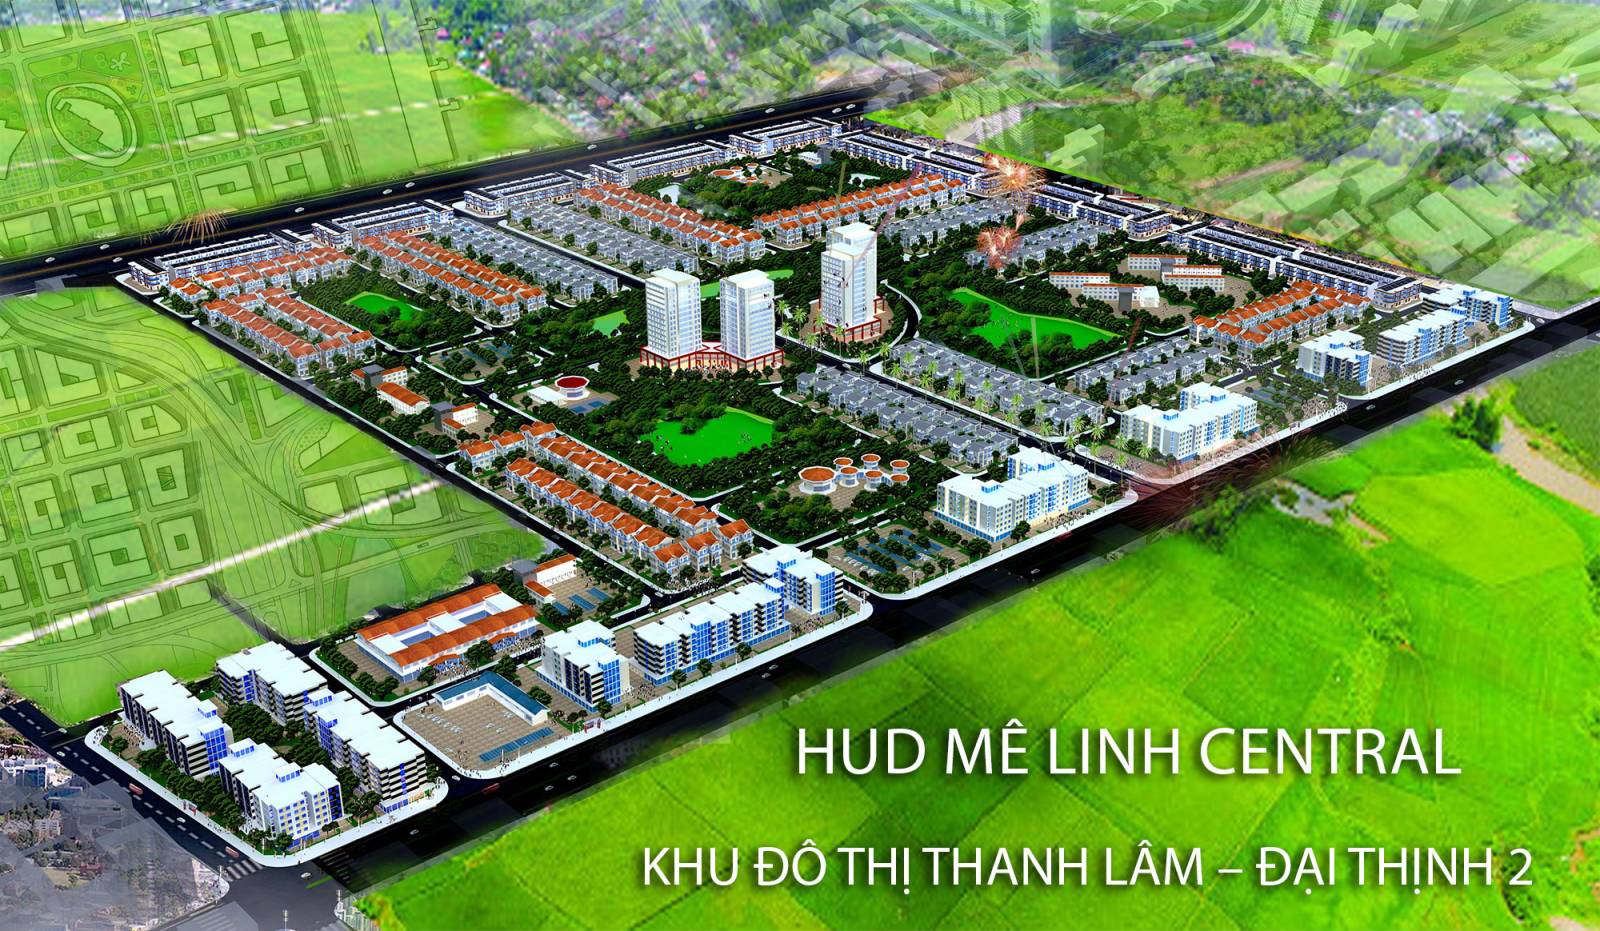 Hud Mê Linh Central